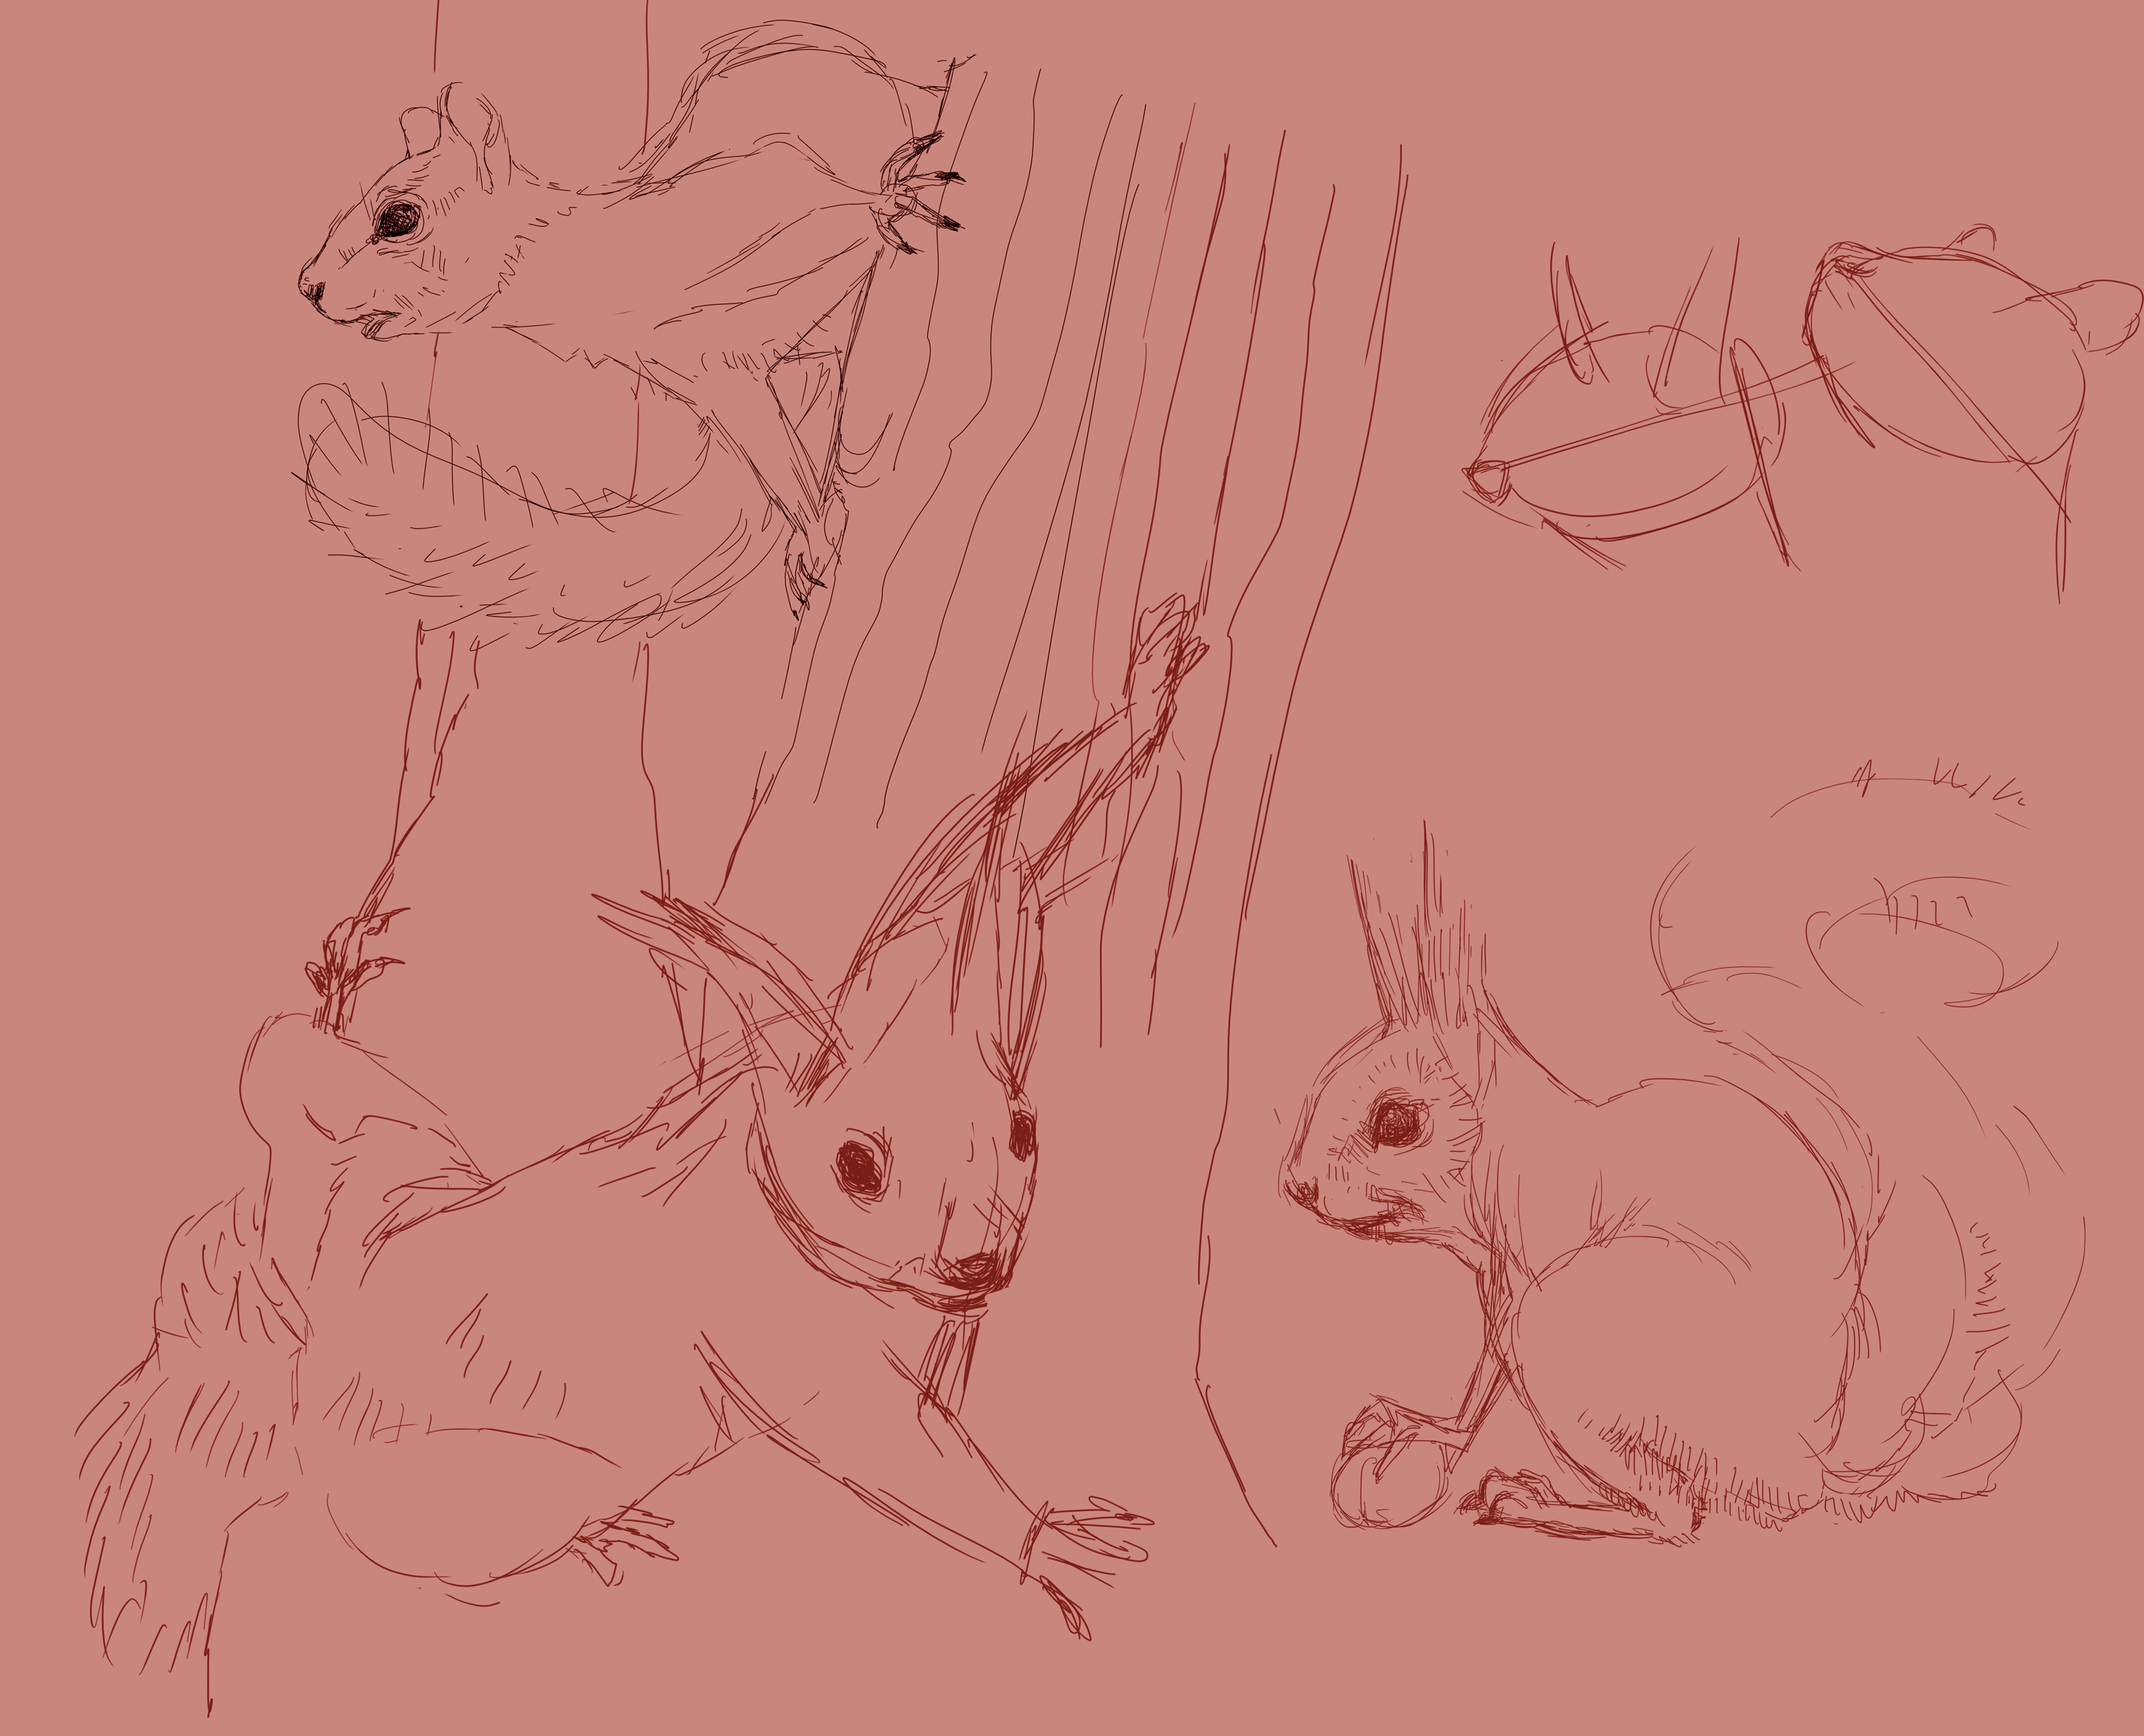 Squirrel studies